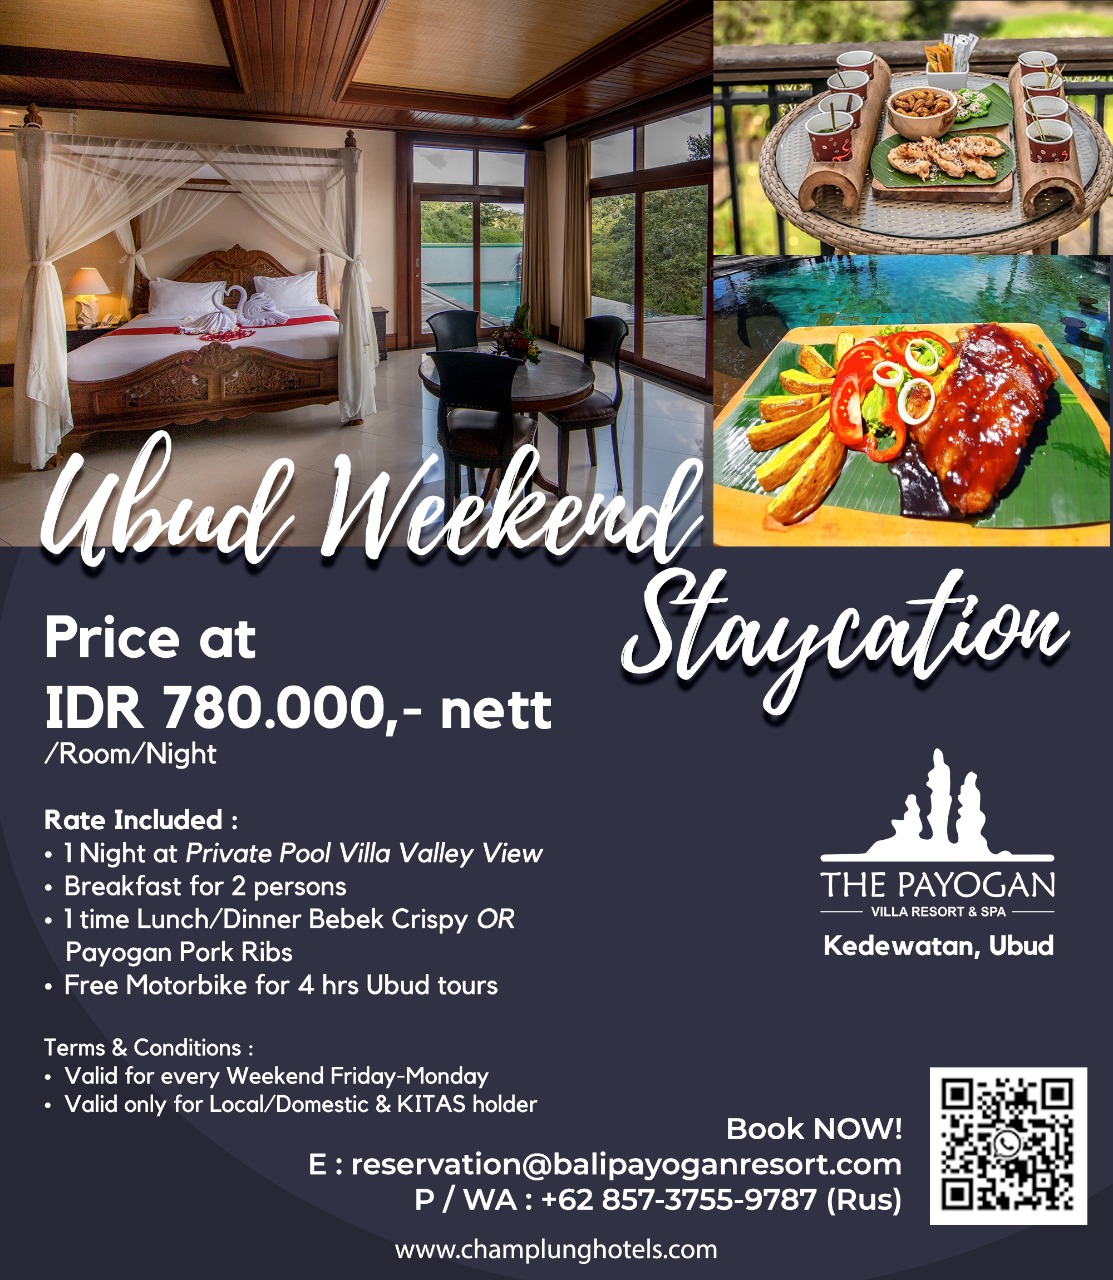 Ubud Weekend Staycation